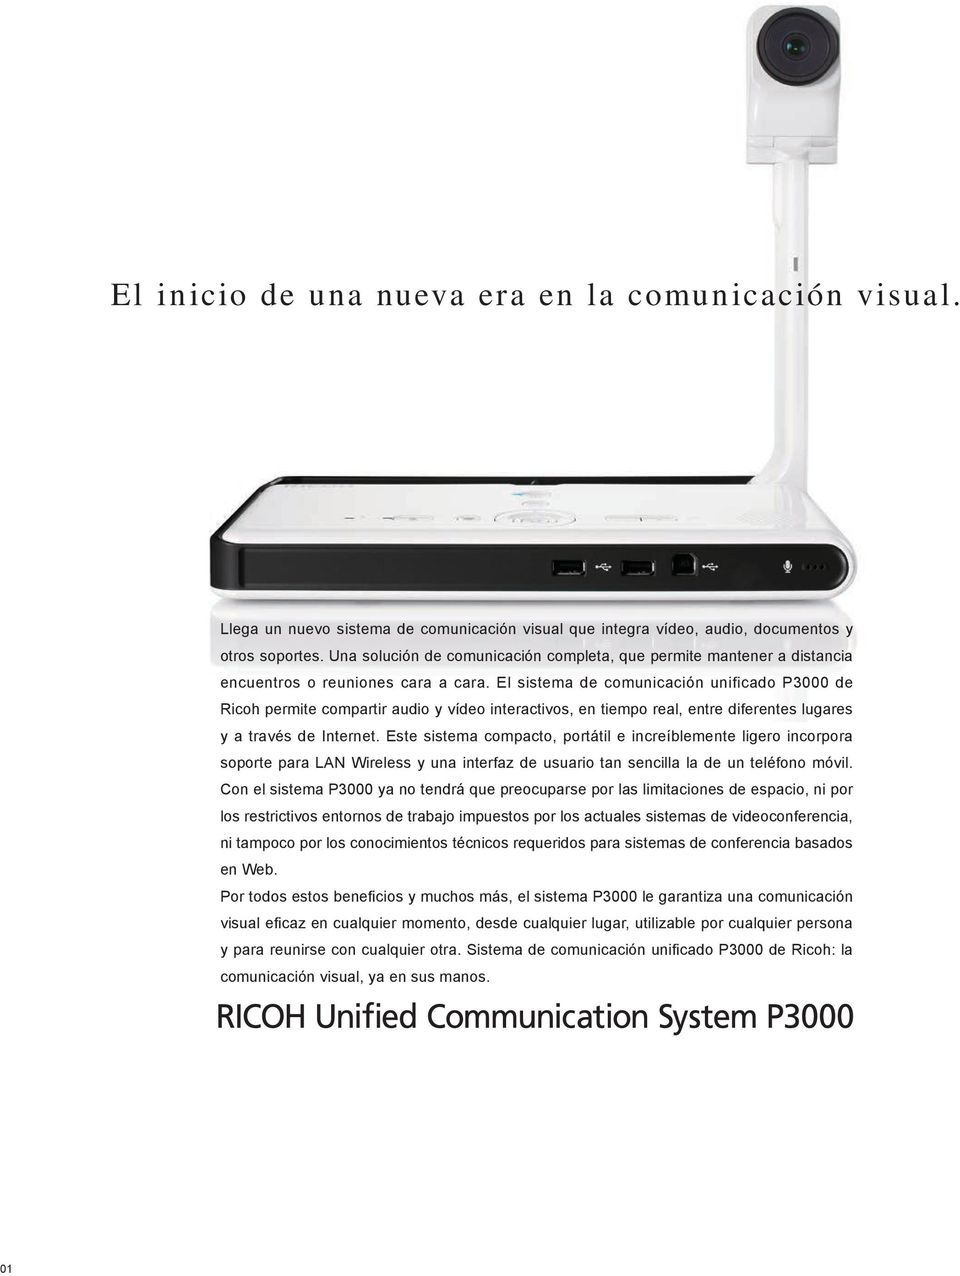 El sistema de comunicación unificado P3000 de Ricoh permite compartir audio y vídeo interactivos, en tiempo real, entre diferentes lugares y a través de Internet.